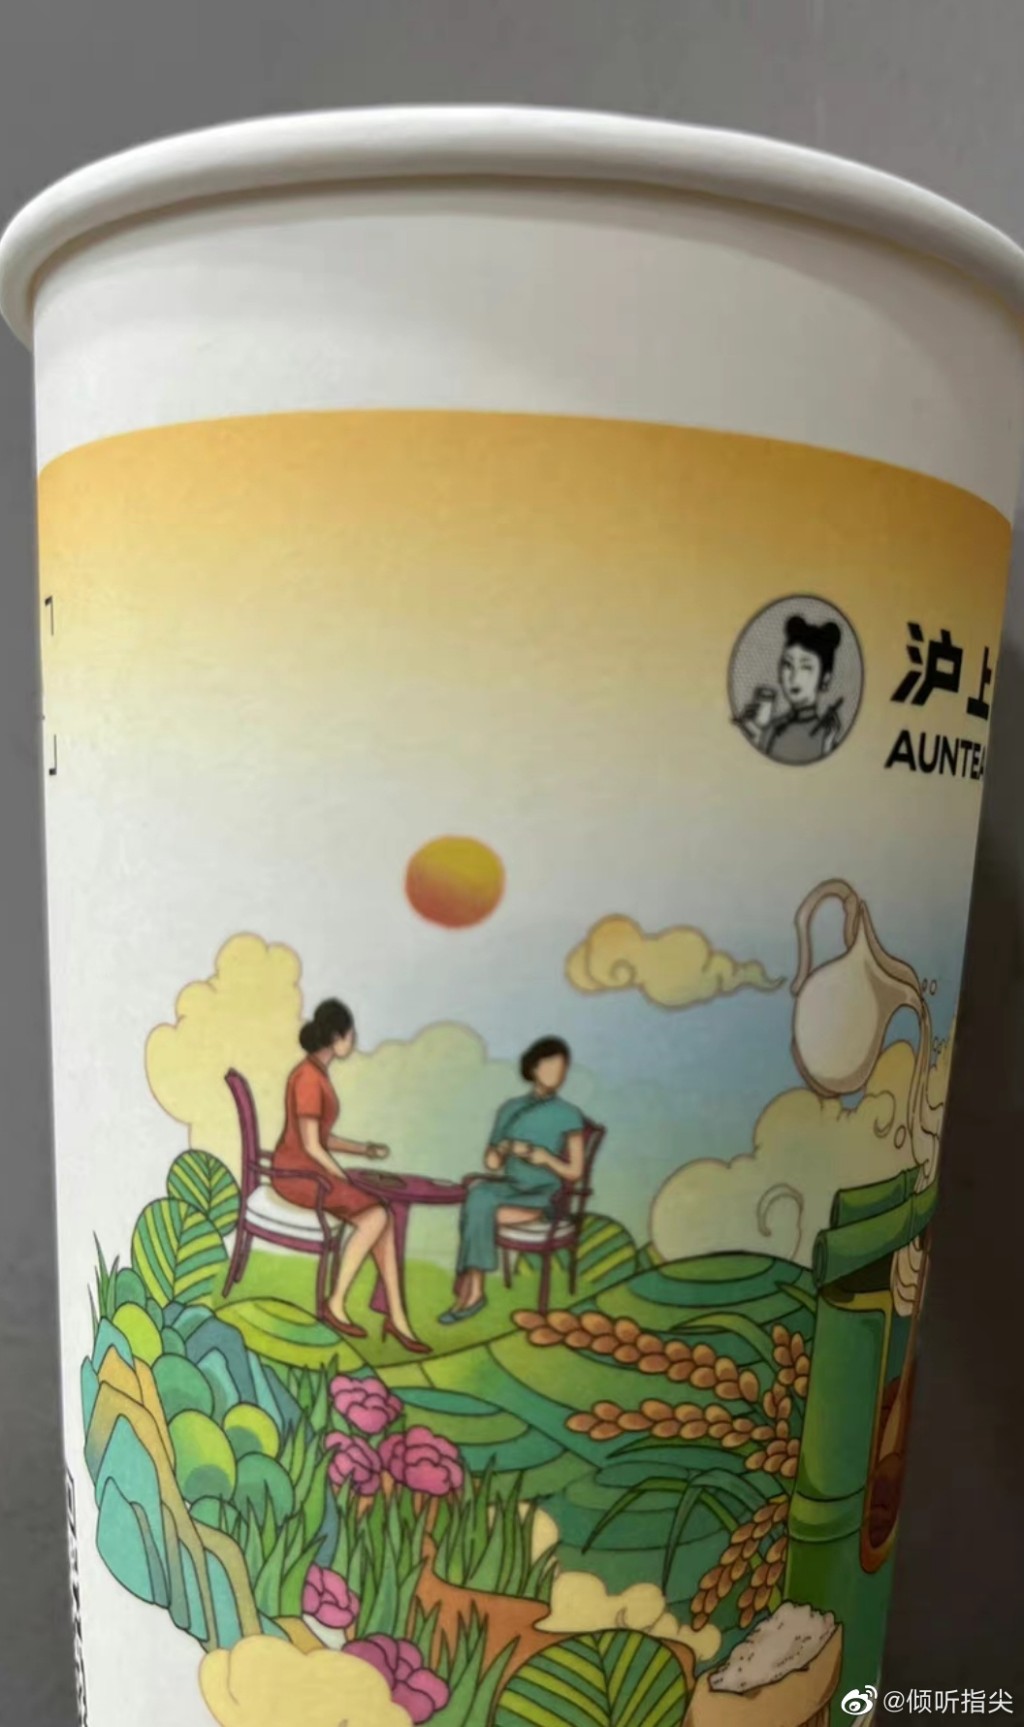 「沪上阿姨」的茶饮杯印有「女子穿高叉旗袍」的图案近日引起网民关注。微博图